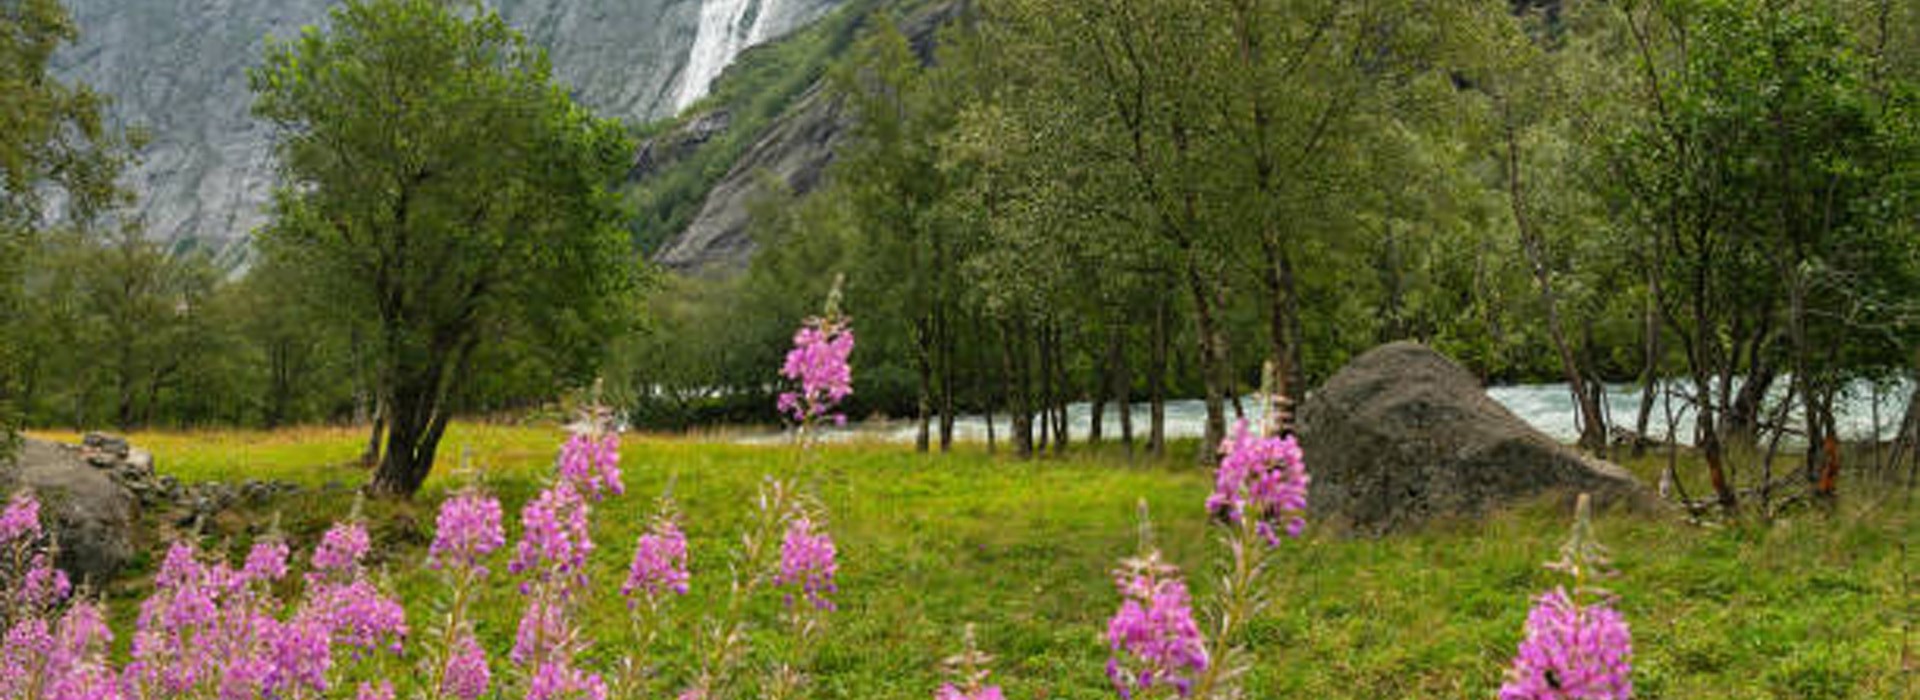 Visiter Le parc national de Jostedal - Norvège